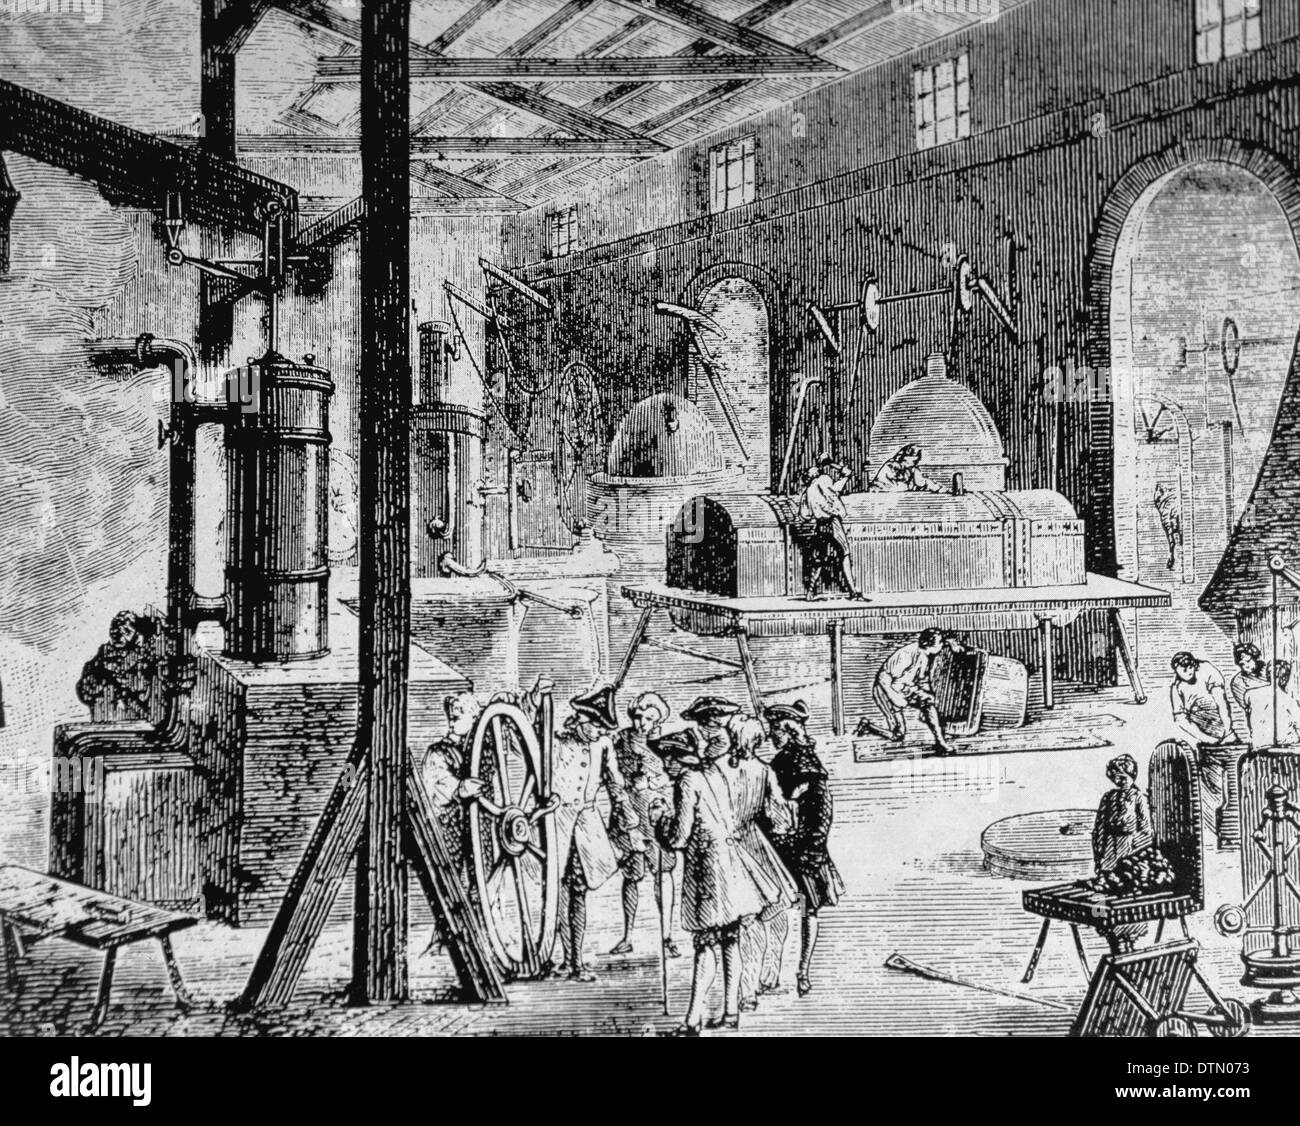 La rivoluzione industriale. Londra. Interno di una fabbrica inglese. Fine del XVIII secolo. Incisione. Foto Stock